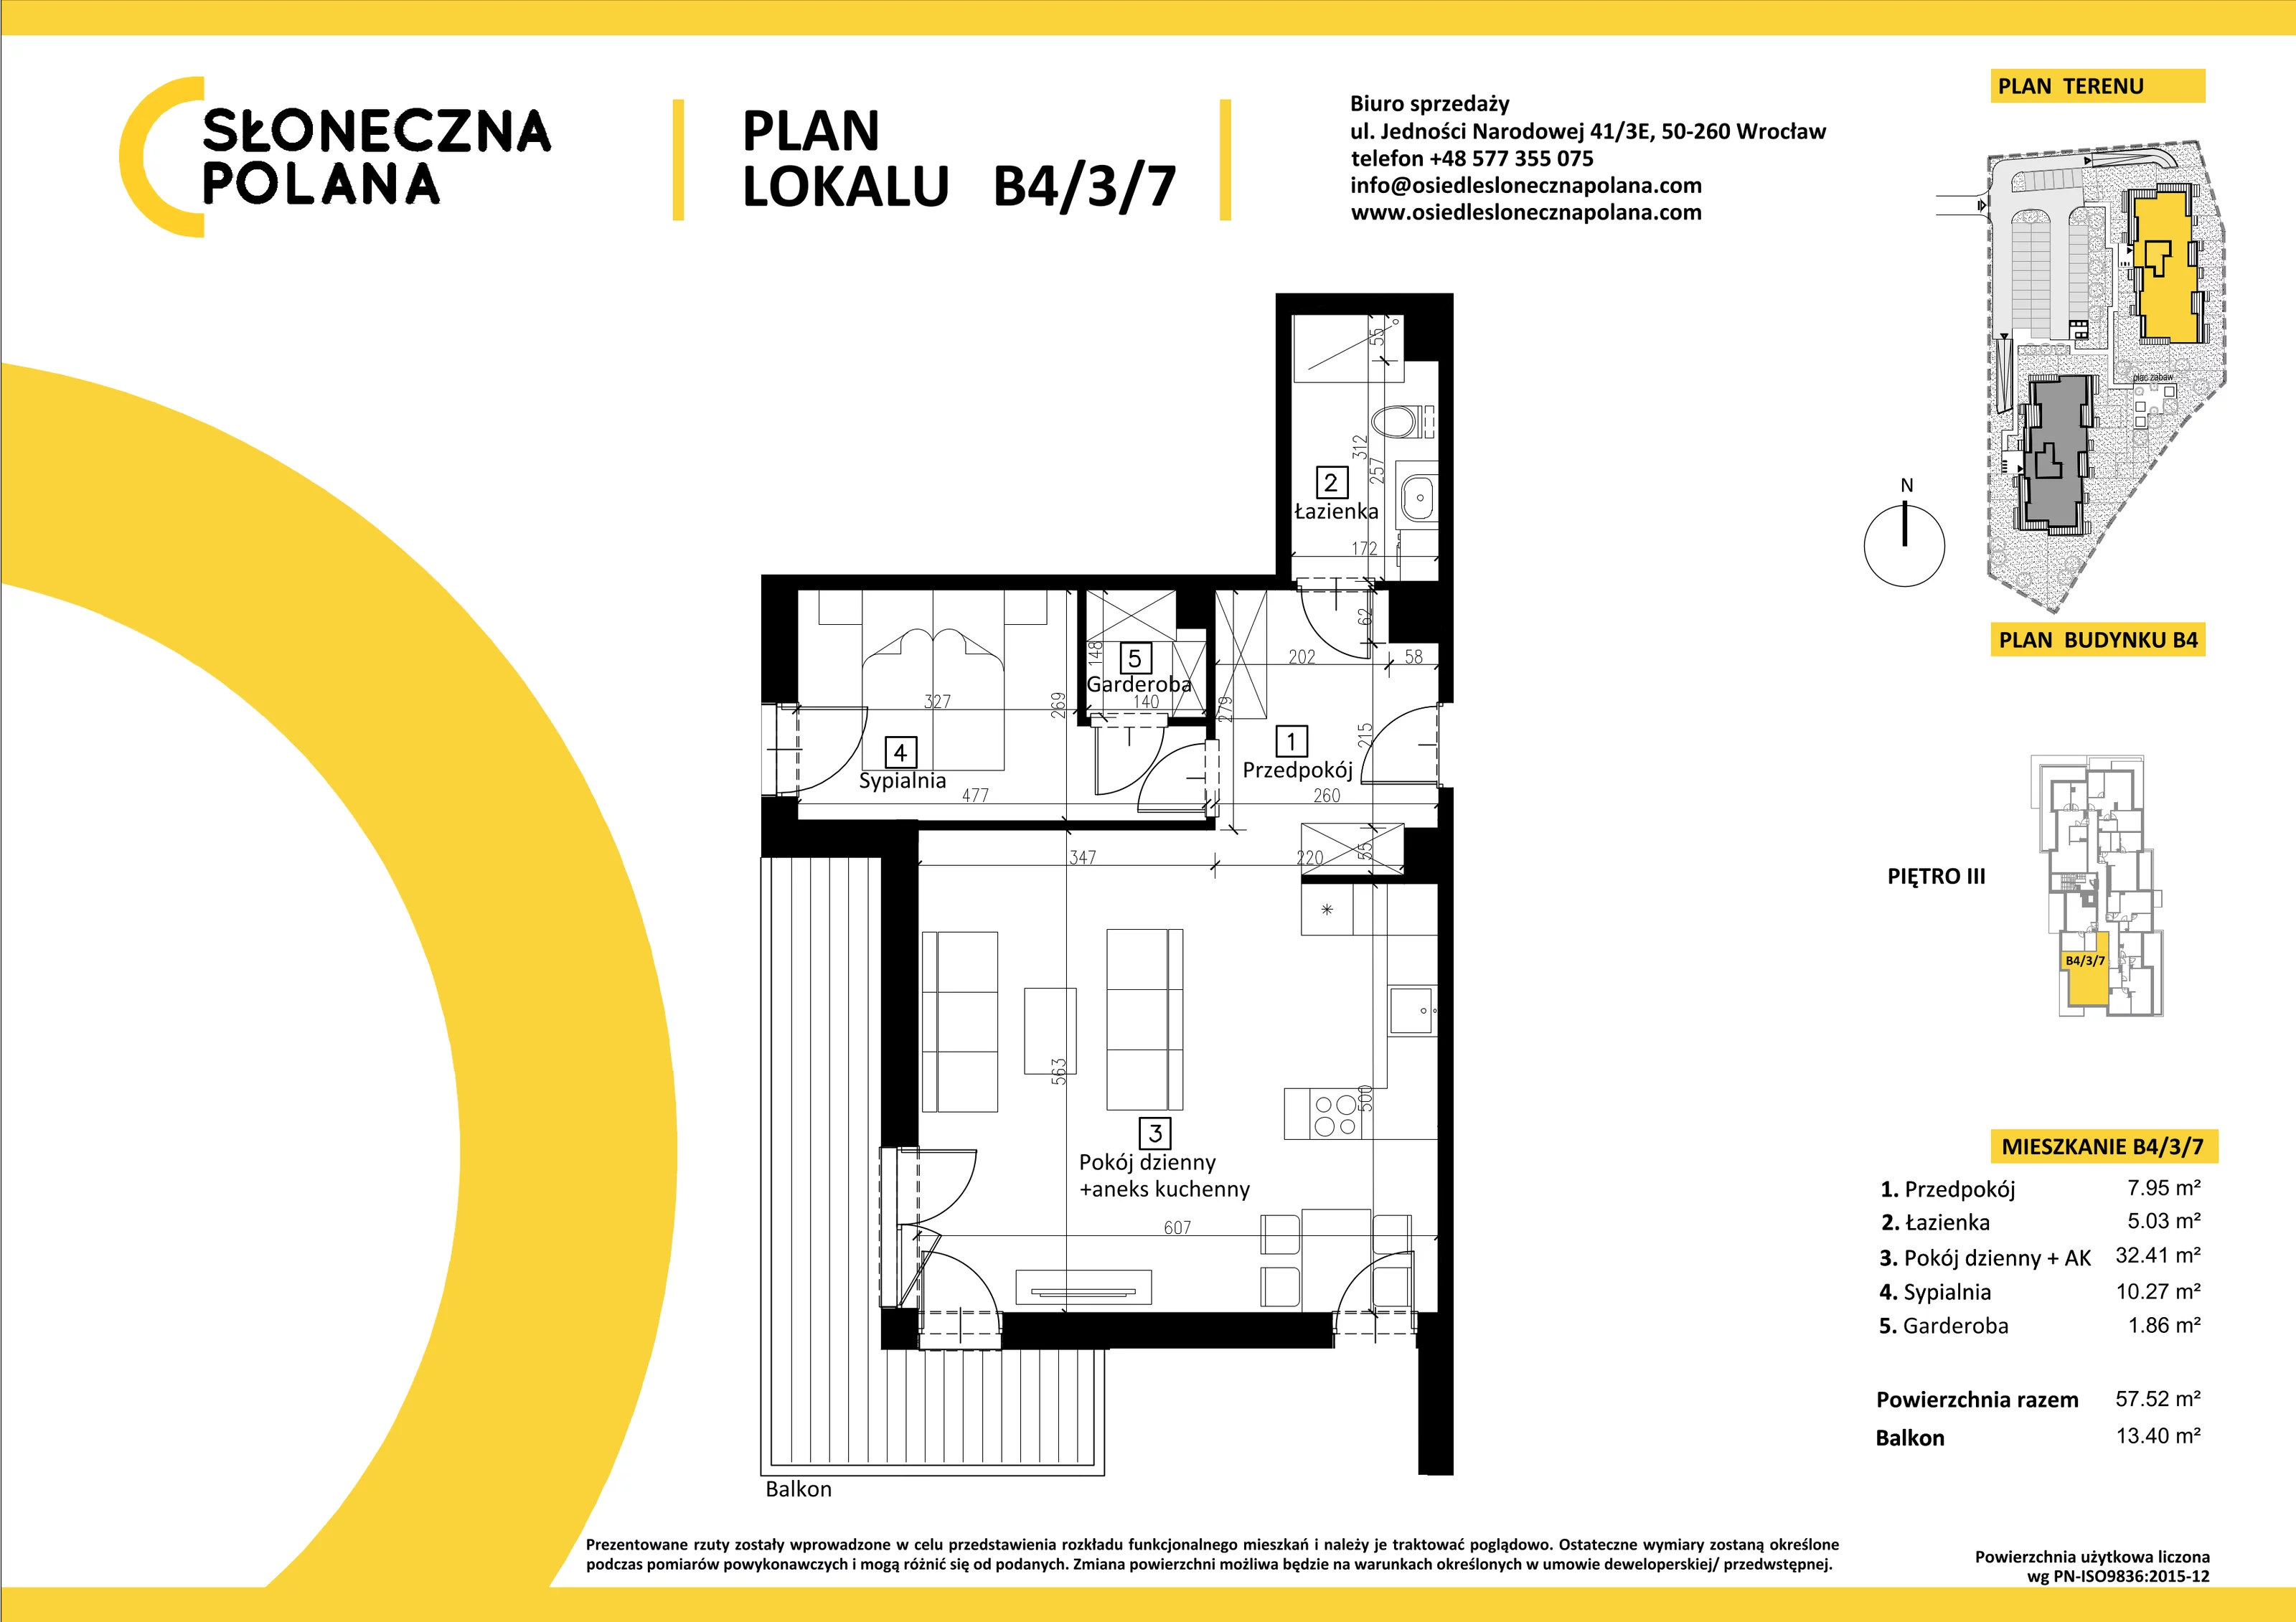 Mieszkanie 57,52 m², piętro 3, oferta nr B4/3/7, Słoneczna Polana, Kudowa-Zdrój, ul. Bluszczowa